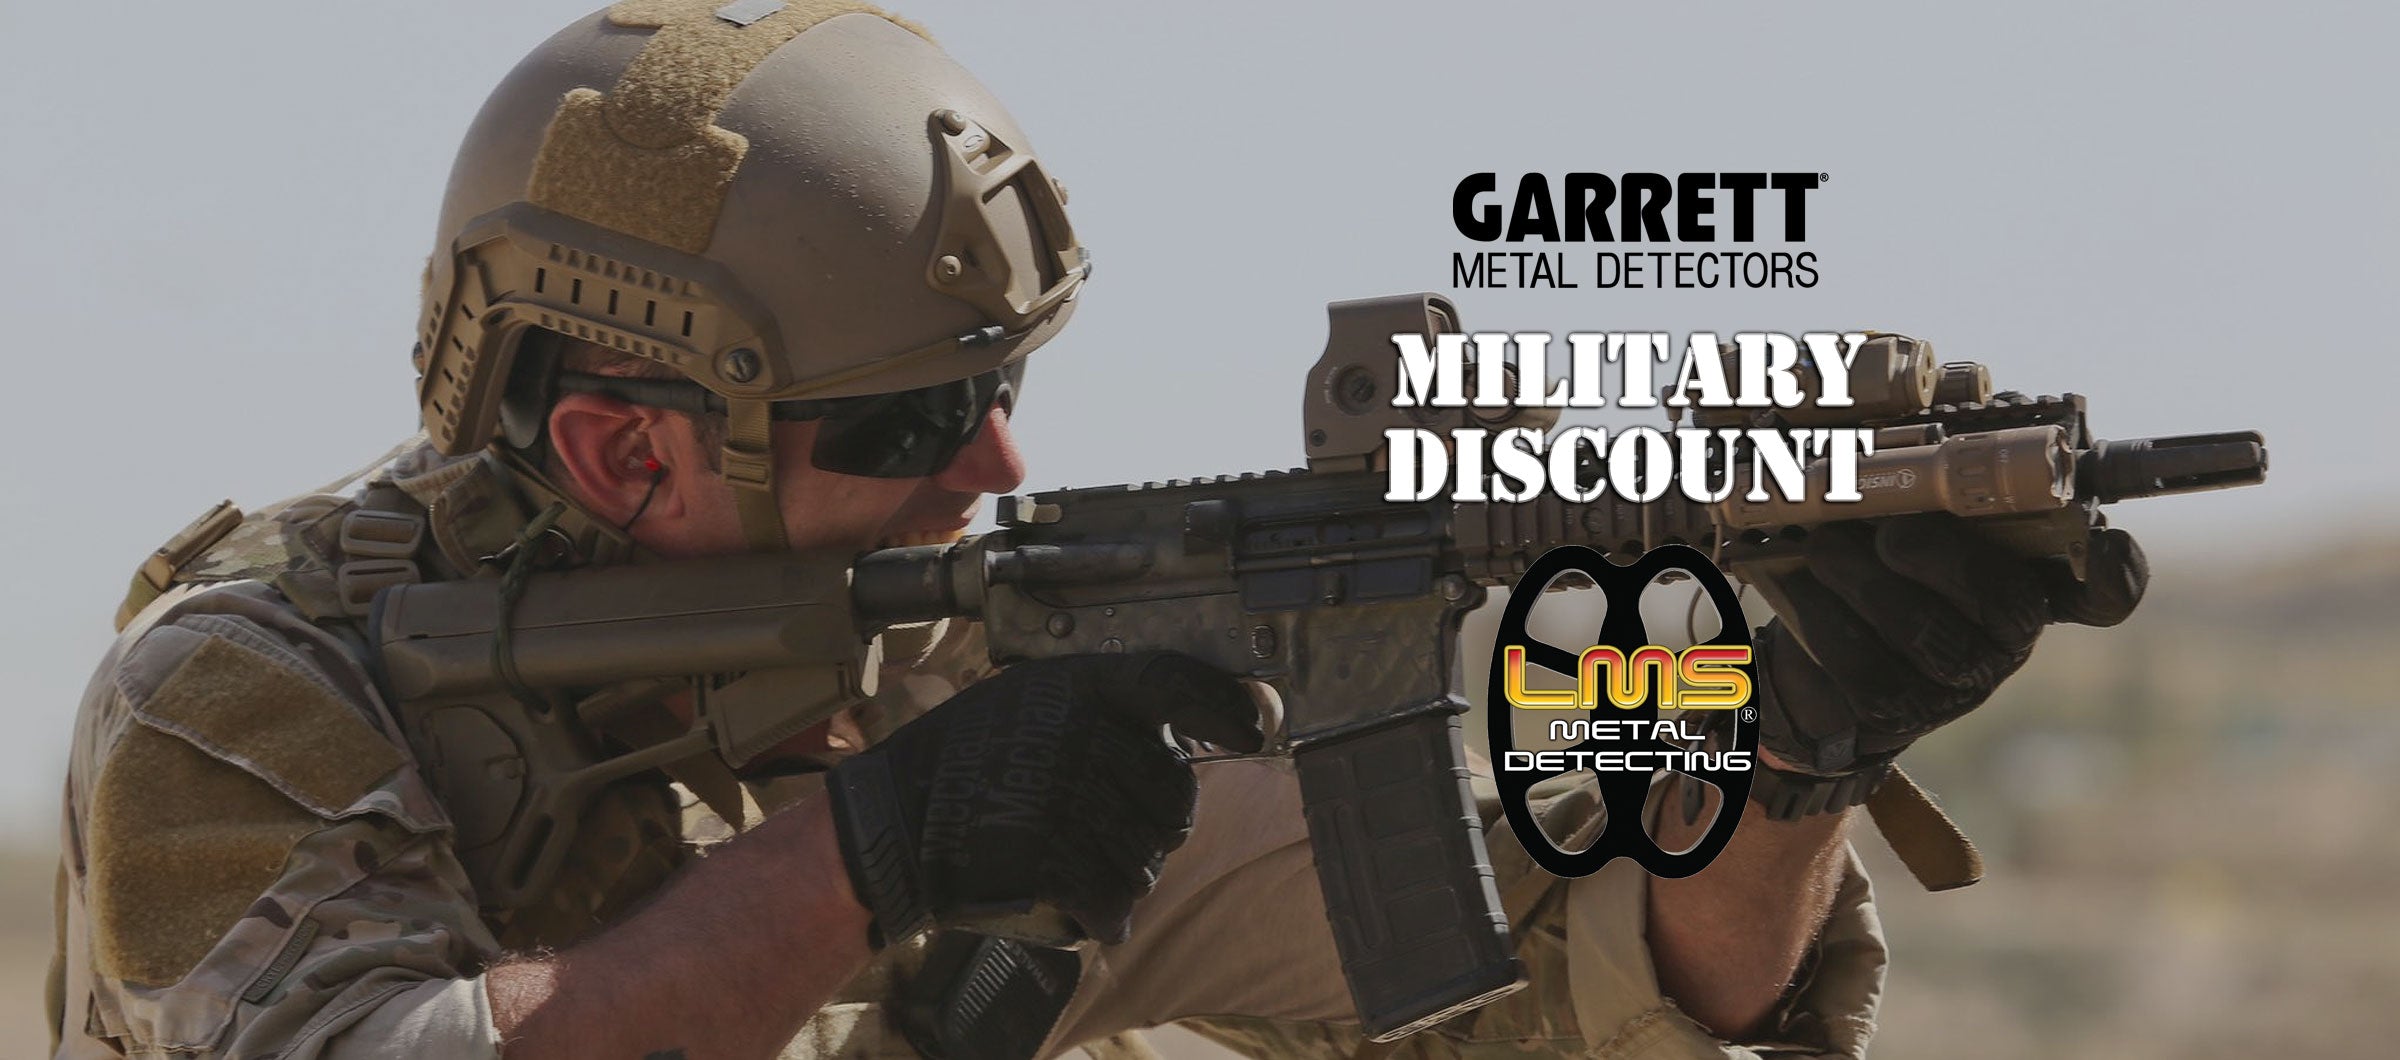 Garrett Military Discount | LMS Metal Detecting